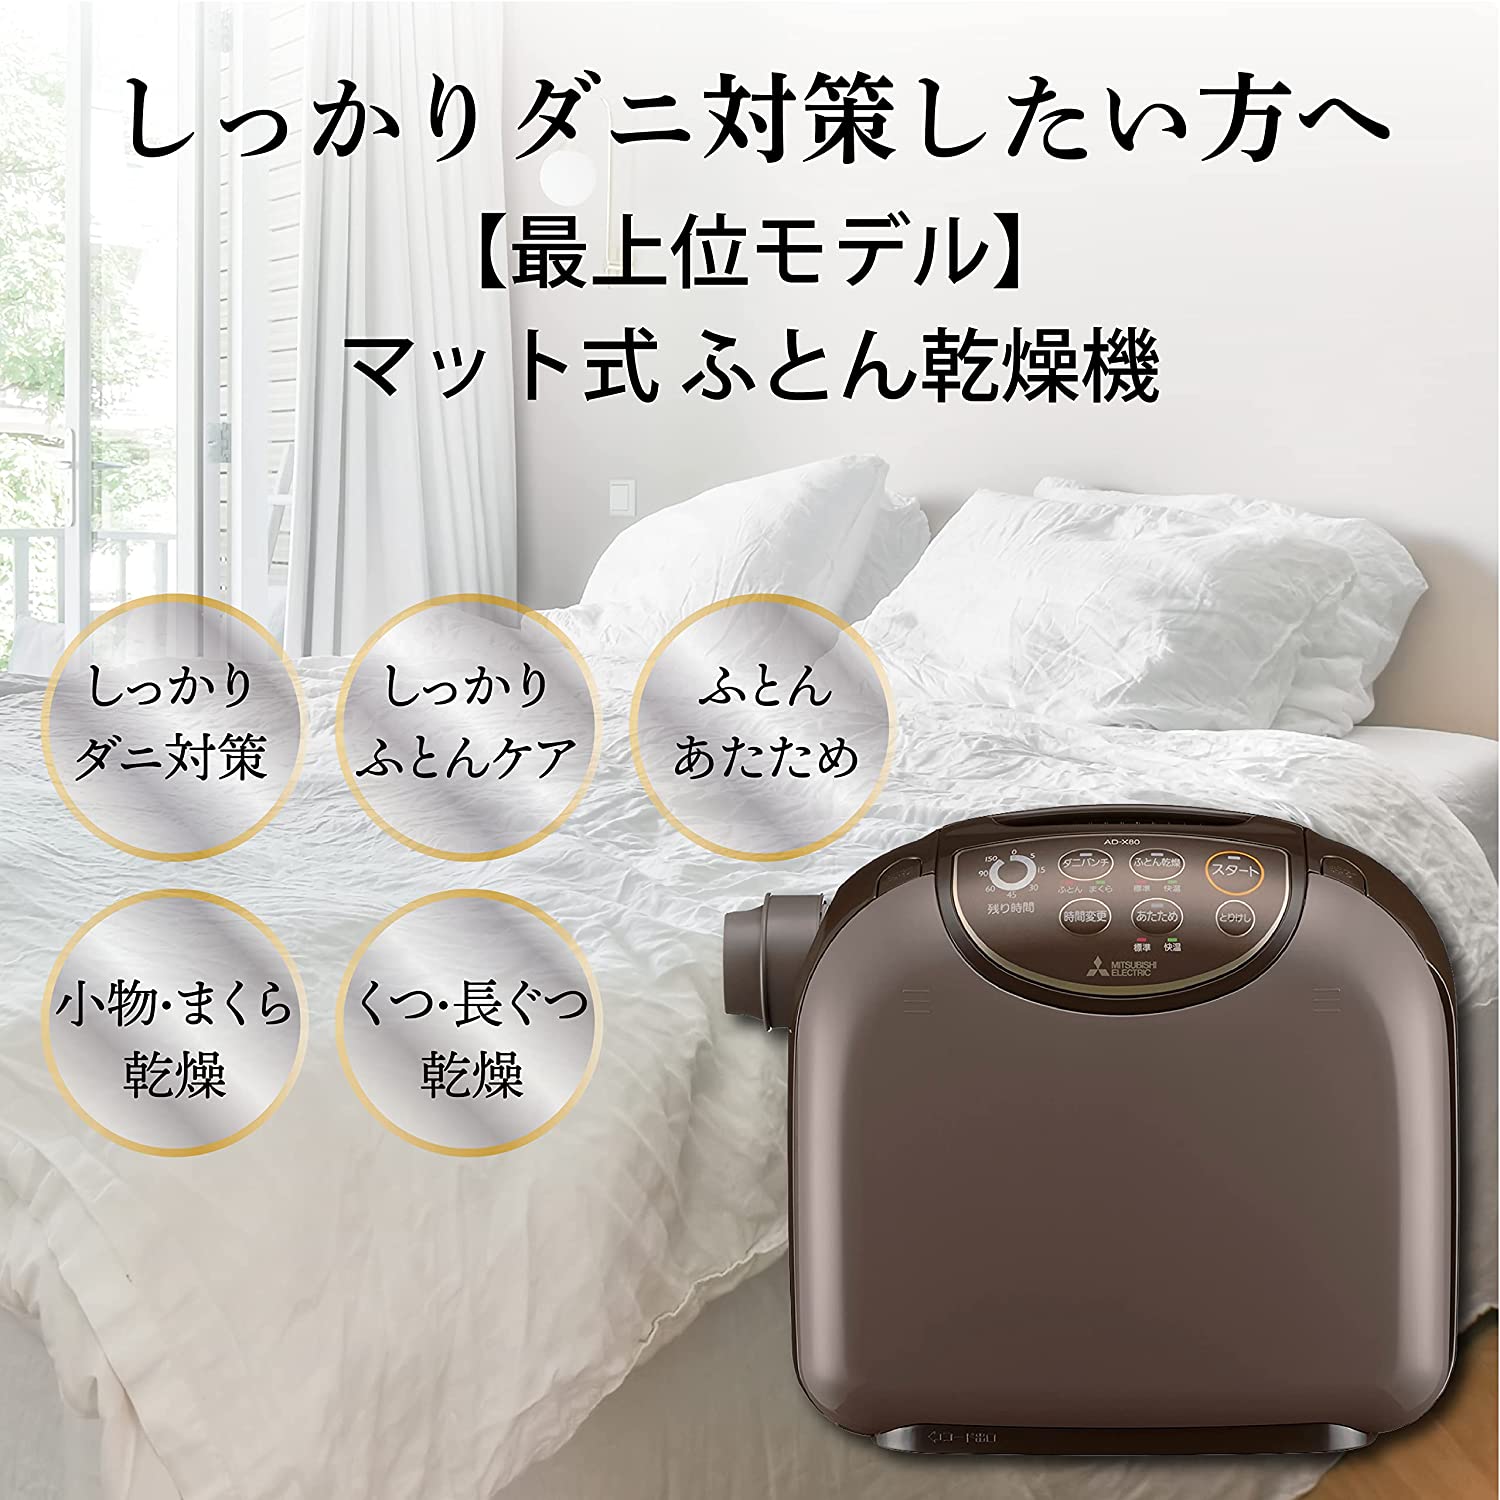 日本代購】MITSUBISHI 三菱電機被褥乾燥機烘被機AD-X80-T | 阿尼先生